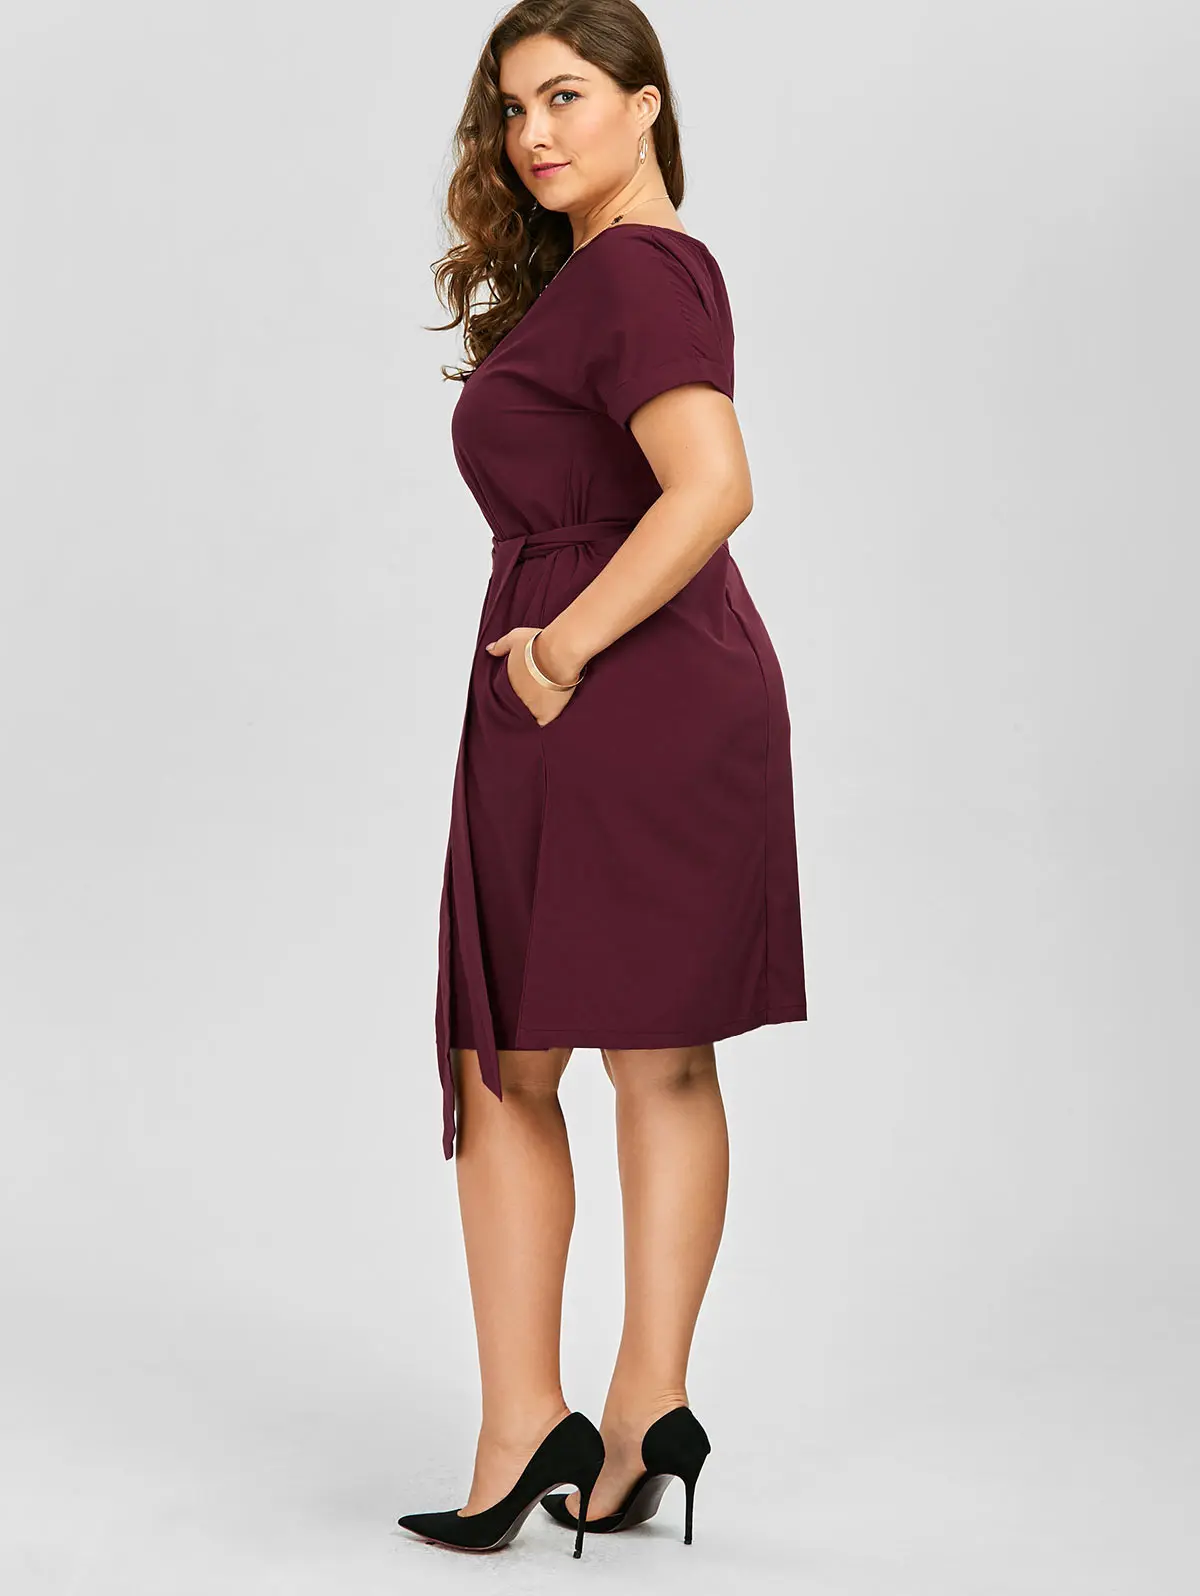 Женское винтажное платье до колена Wipalo с поясом и карманами одежда для работы - Фото №1